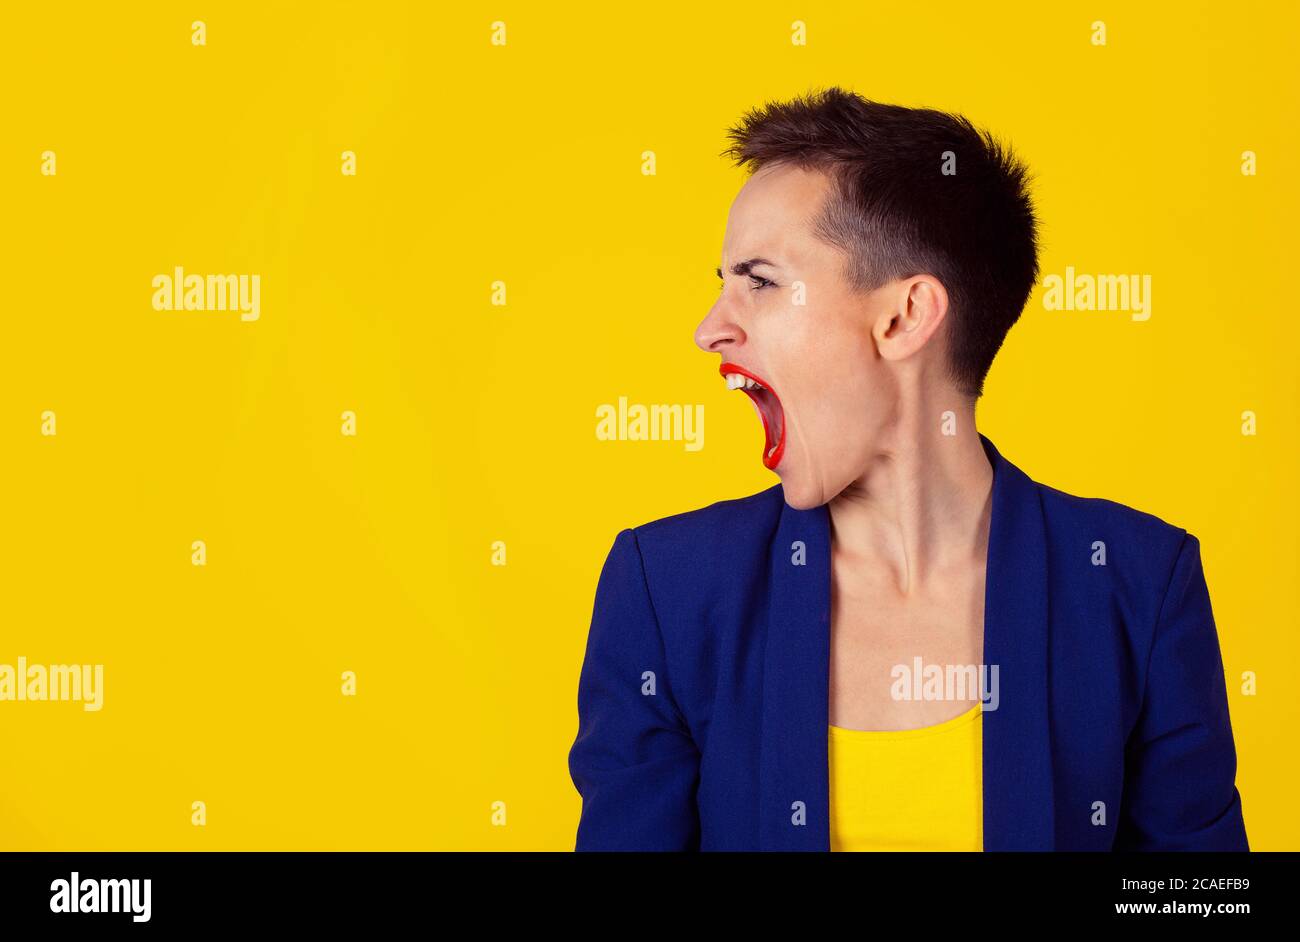 Rabbia. Closeup ritratto di donna arrabbiata in rabbia profilo laterale vista urlando bocca urlante aperta isolato su sfondo giallo. Modello in camicia gialla Foto Stock